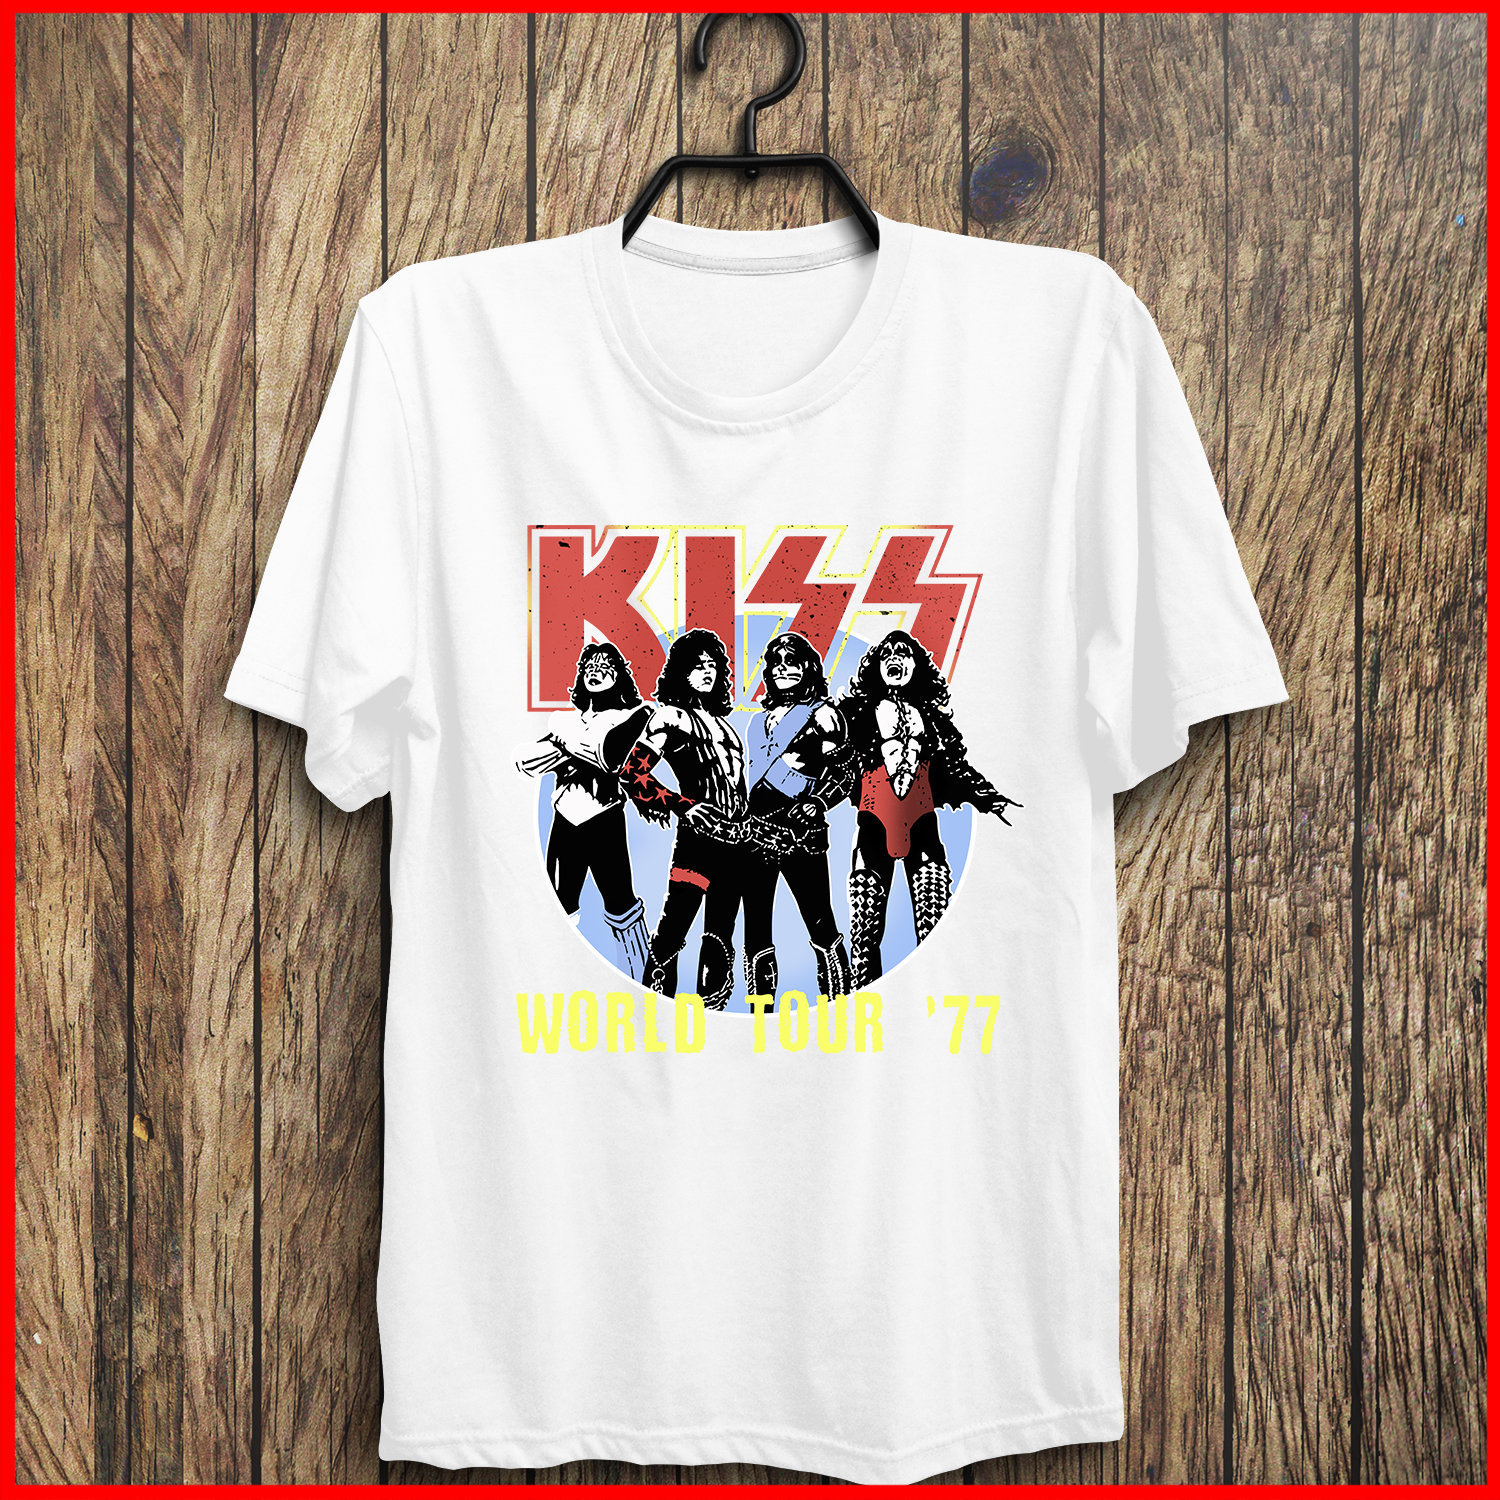 kiss world tour 77 shirt